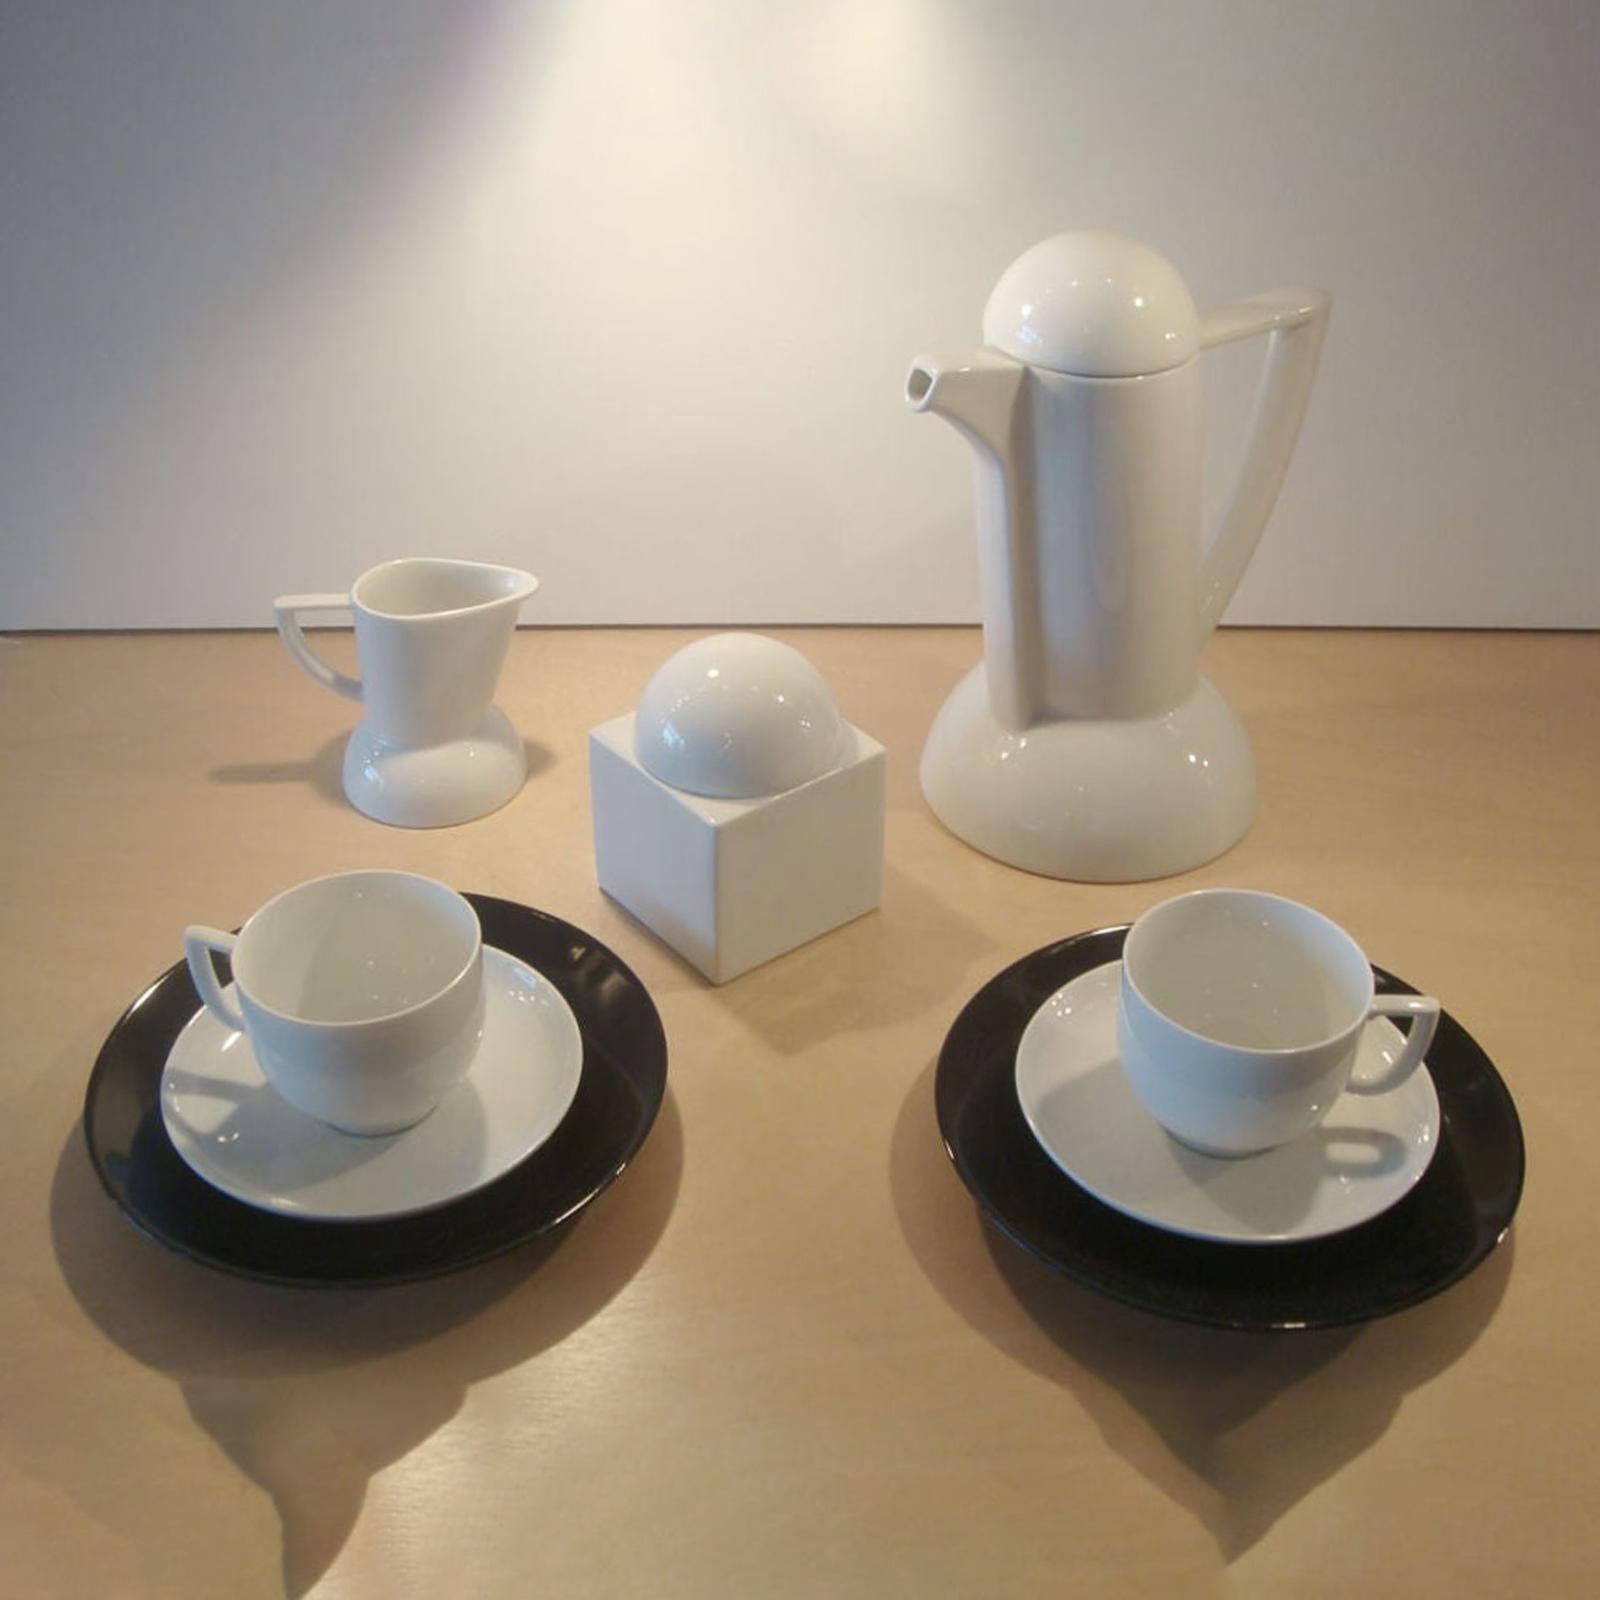 Wunderschönes Teeservice im Memphis-Stil 'City-Scape' von Lutz Rabold für Arzberg Porcelain, Deutschland, bestehend aus einer Teekanne mit Deckel (9.5in x 7.5in x 5.5in), einem Milchkännchen (3.5in x 4.25in x 3.0in), eine Zuckerdose mit Deckel